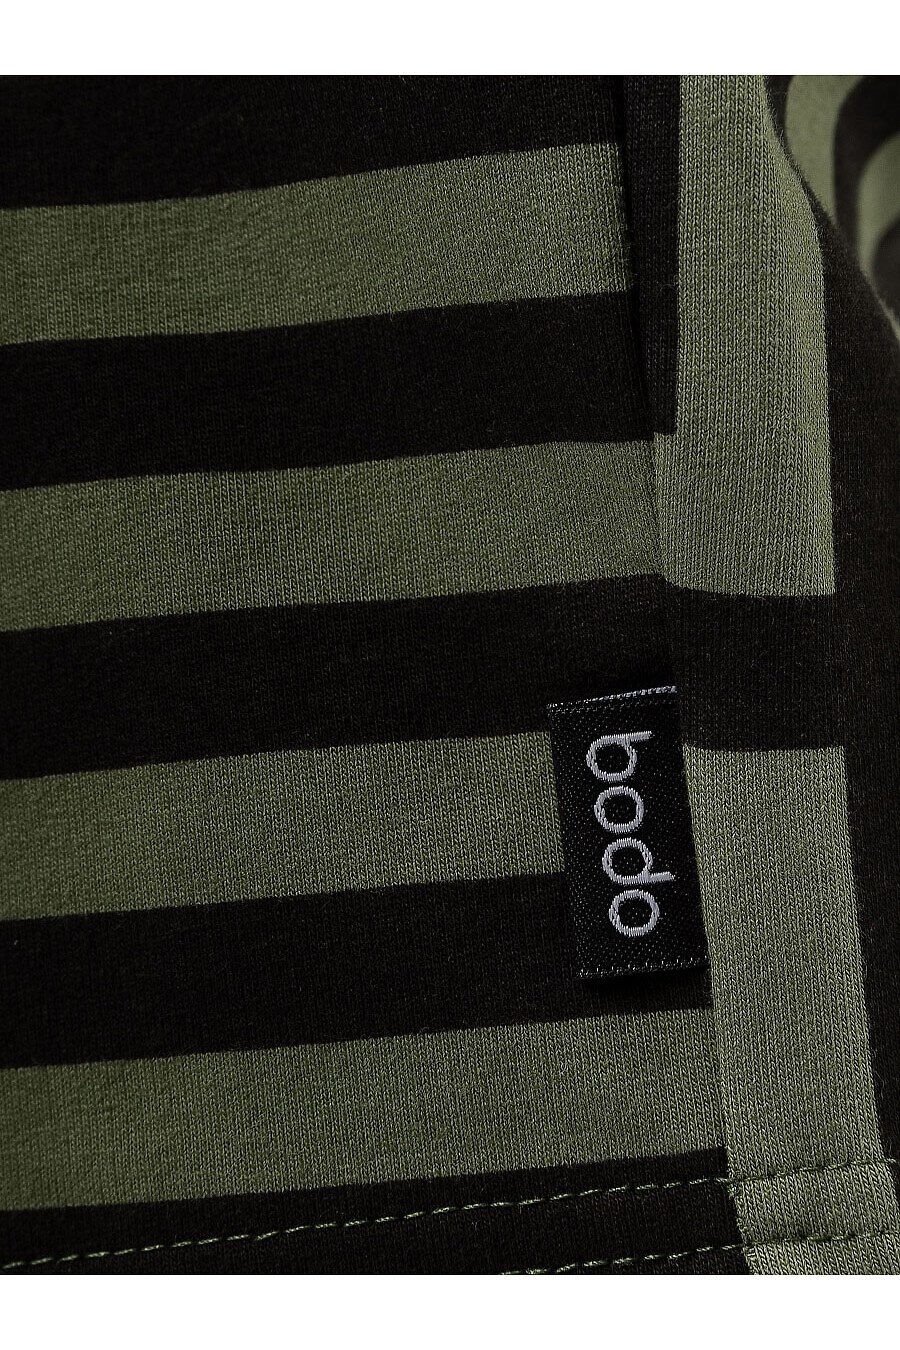 Шорты BODO (796210), купить в Moyo.moda